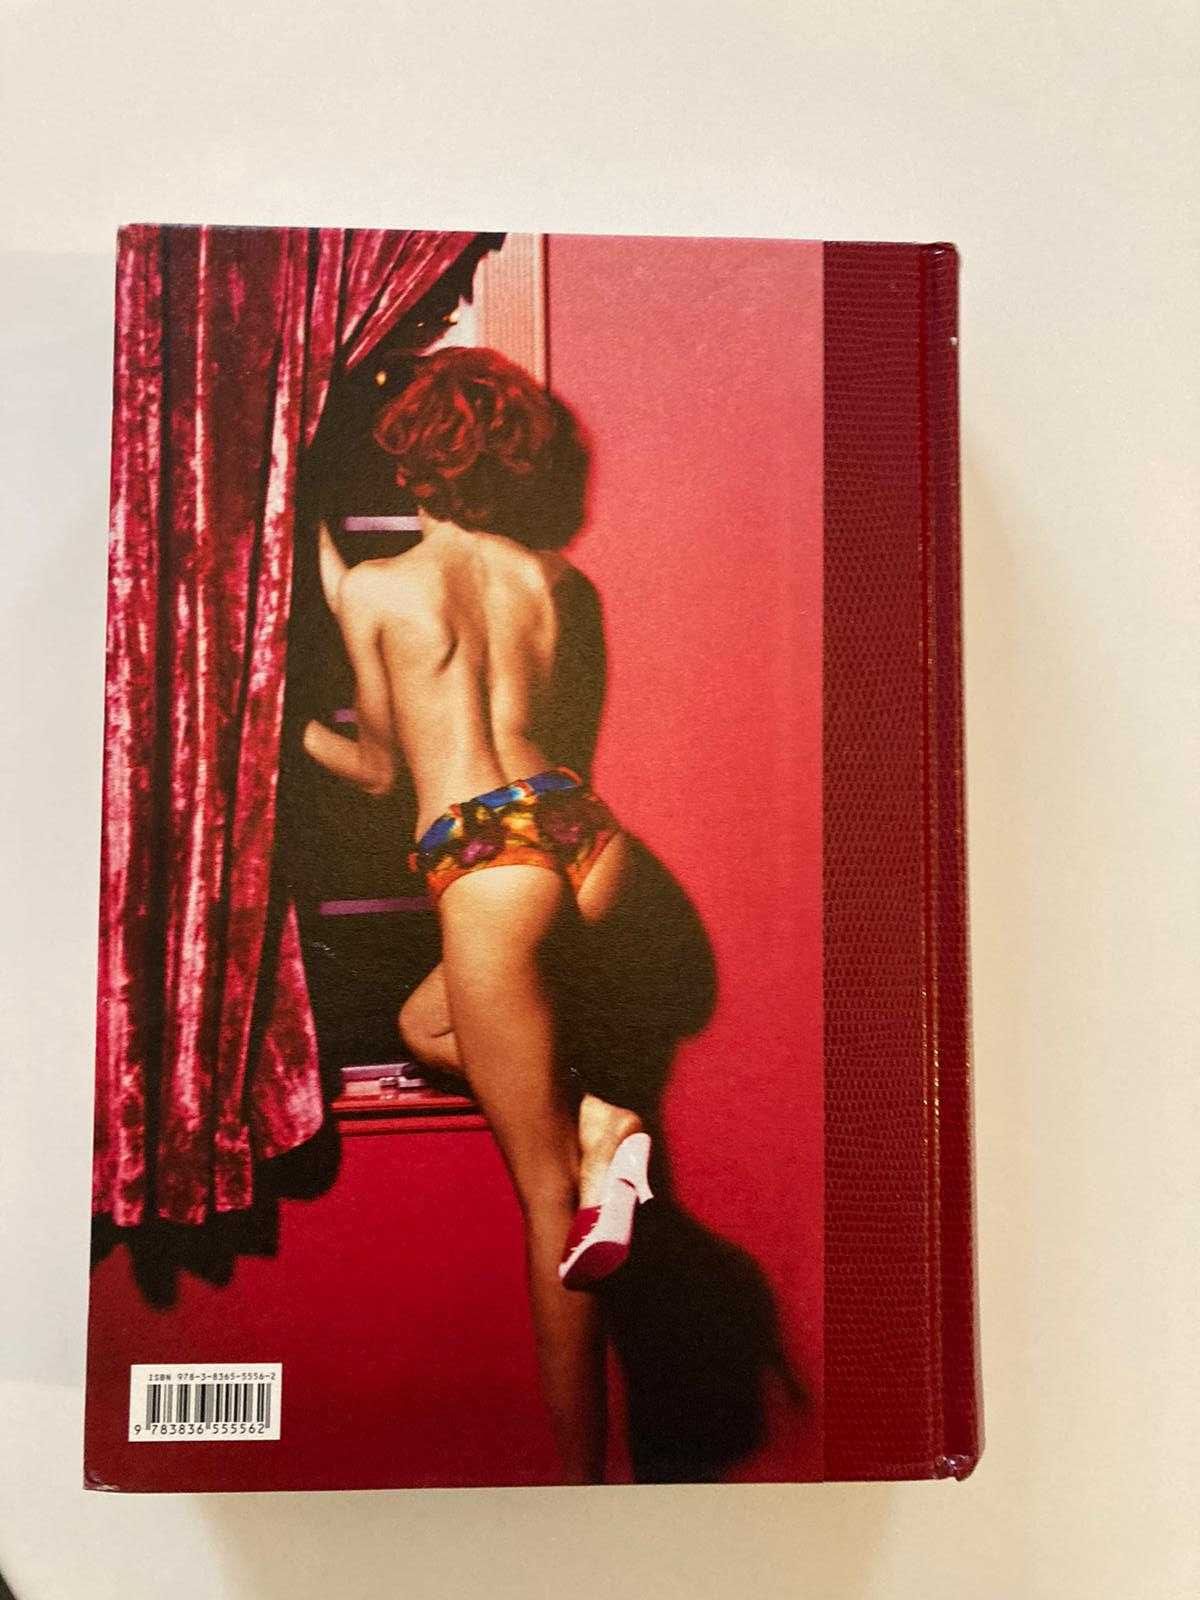 Ellen von Unwerth. Fräulein carte arata fotografie moda erotic nud